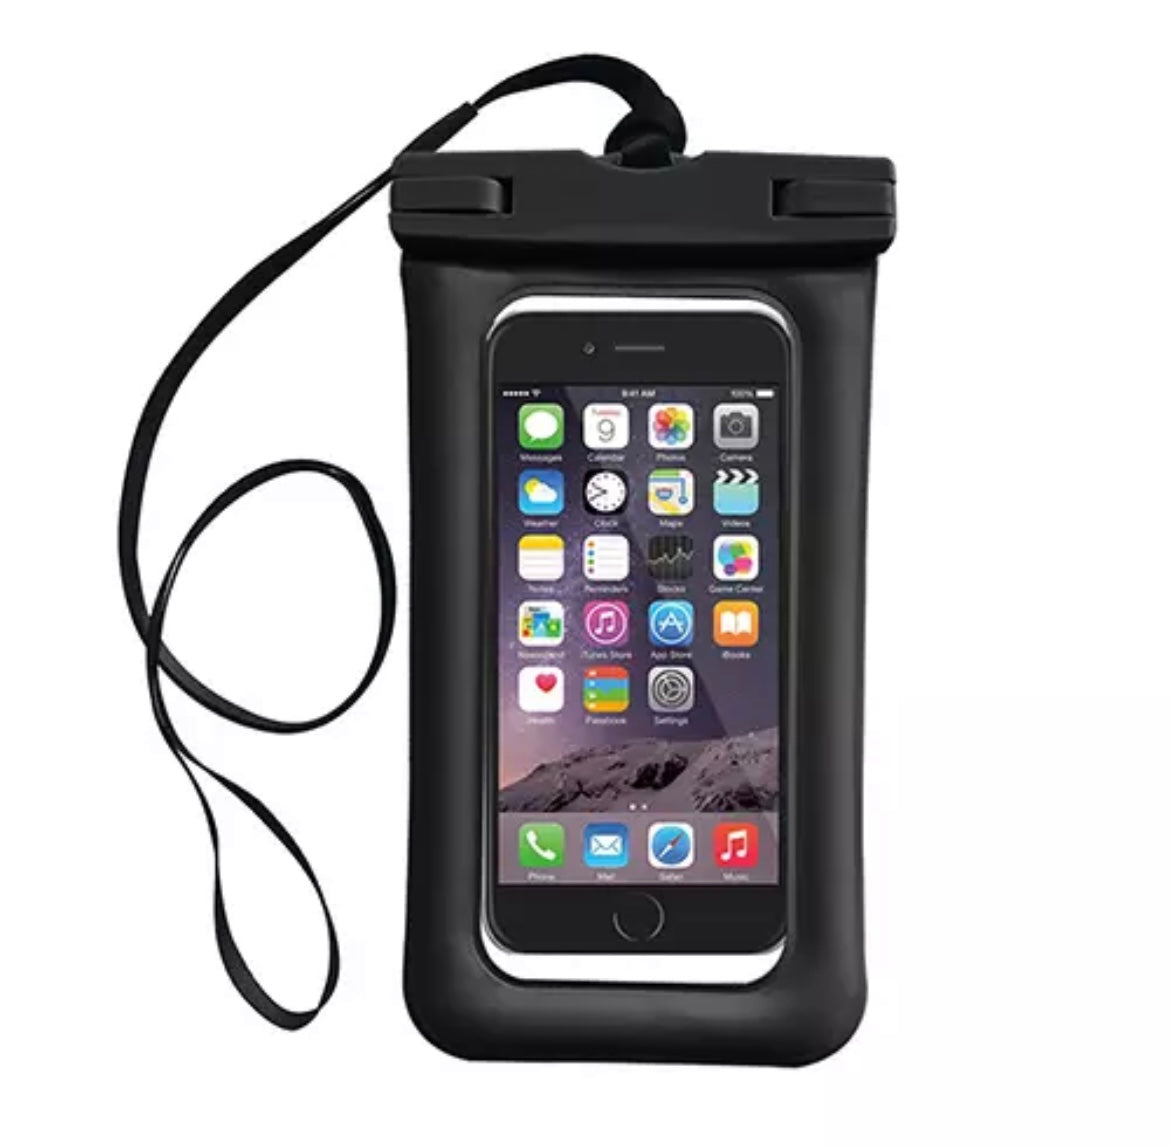 Waterproof mobile case - Black